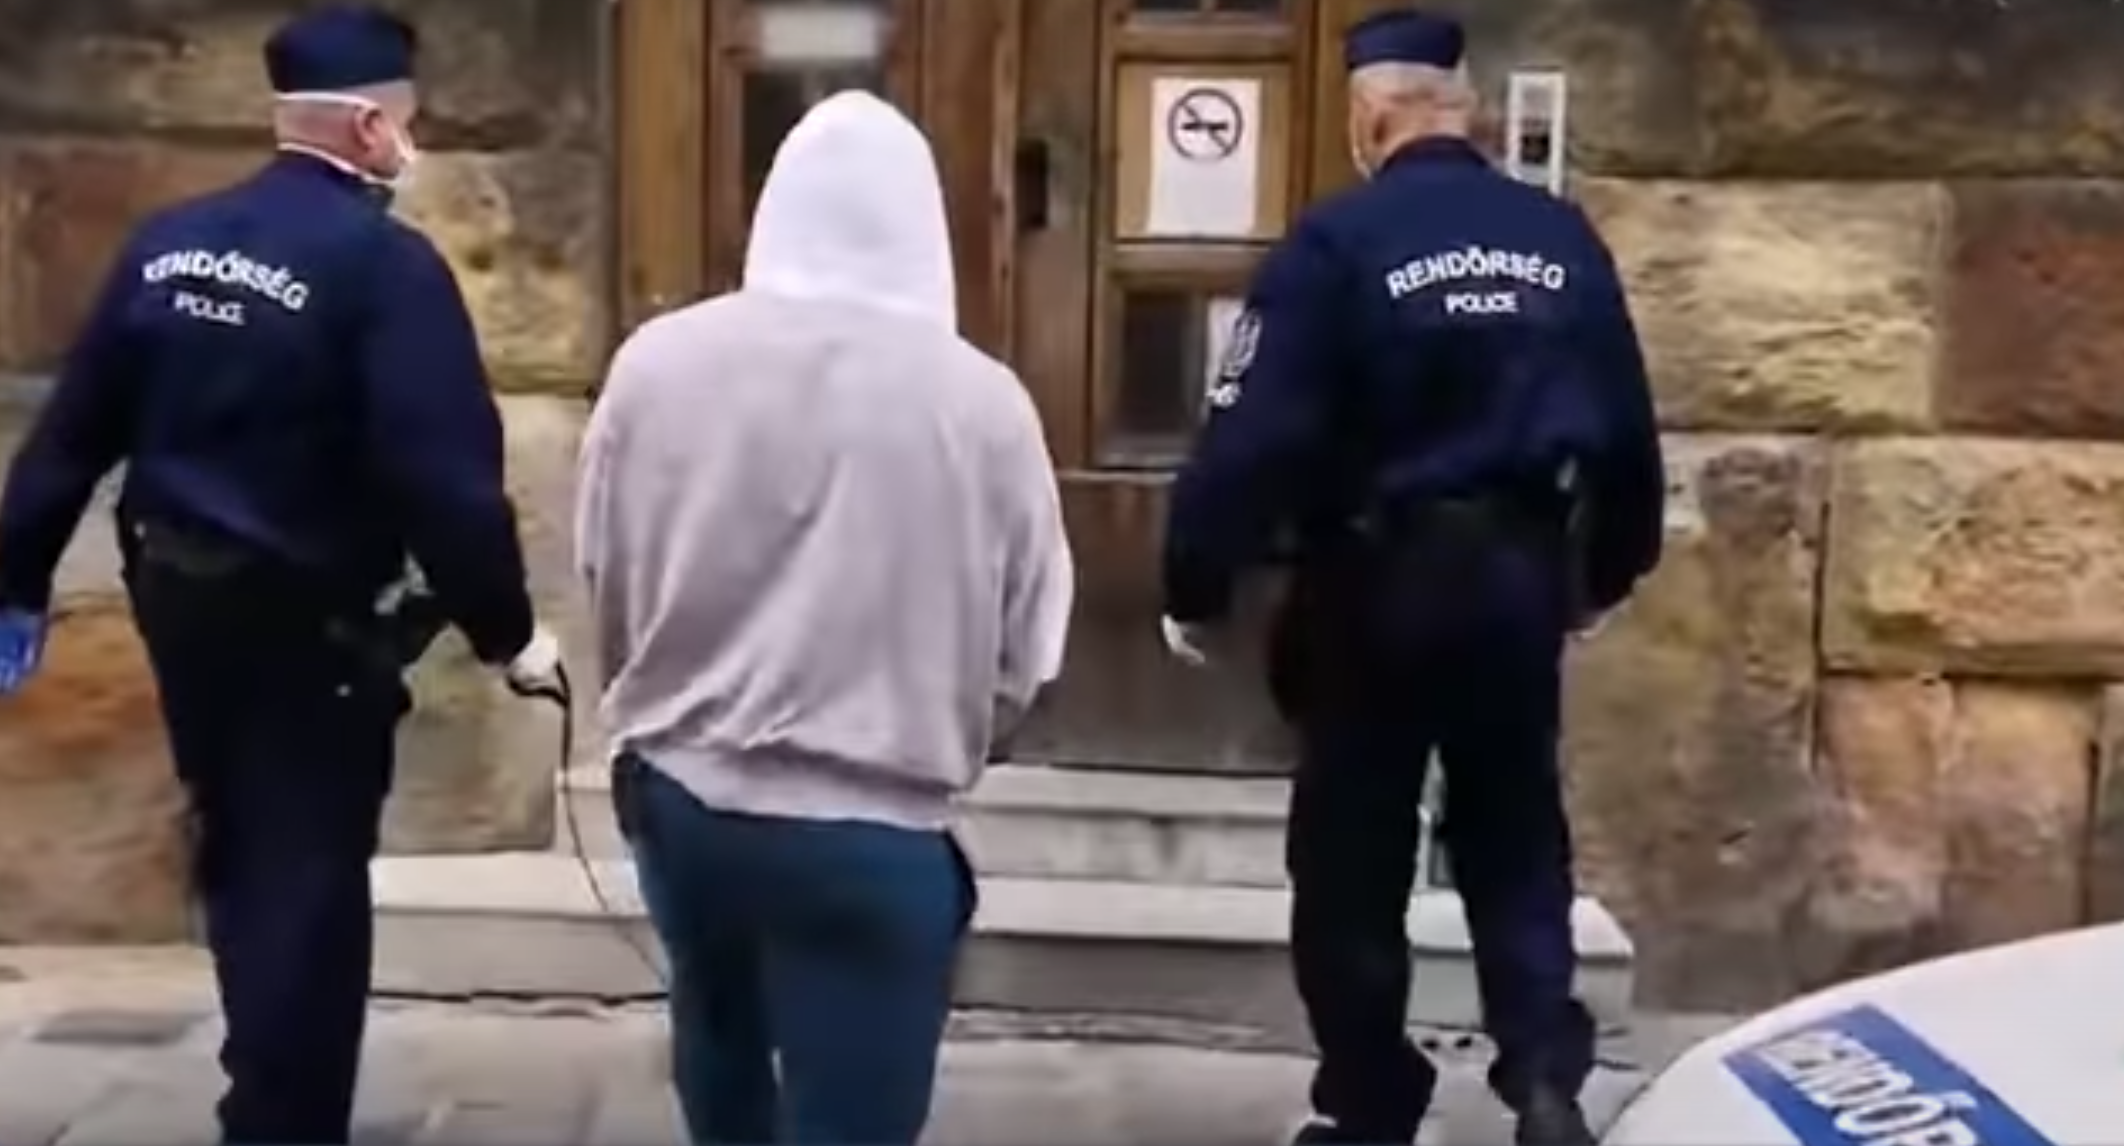 Hat prostituáltat támadott meg Budapesten egy külföldi férfi, akit elfogtak a rendőrök